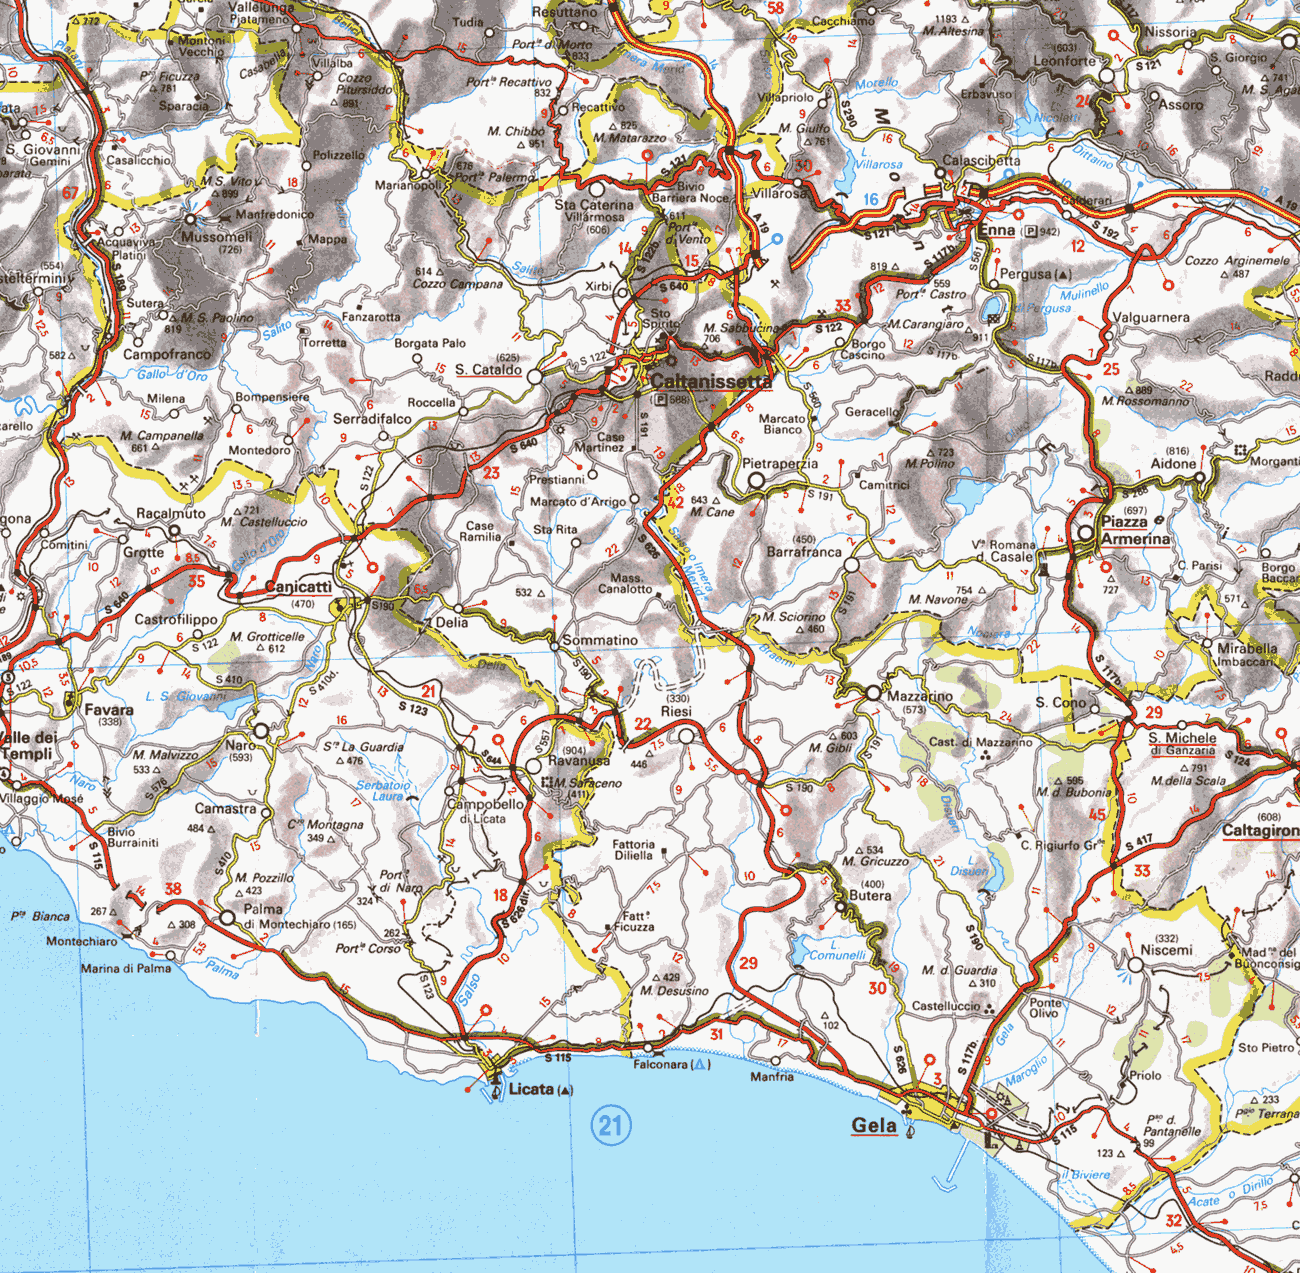 Mappa della provincia di Caltanissetta - Map of the Province of Caltanissetta